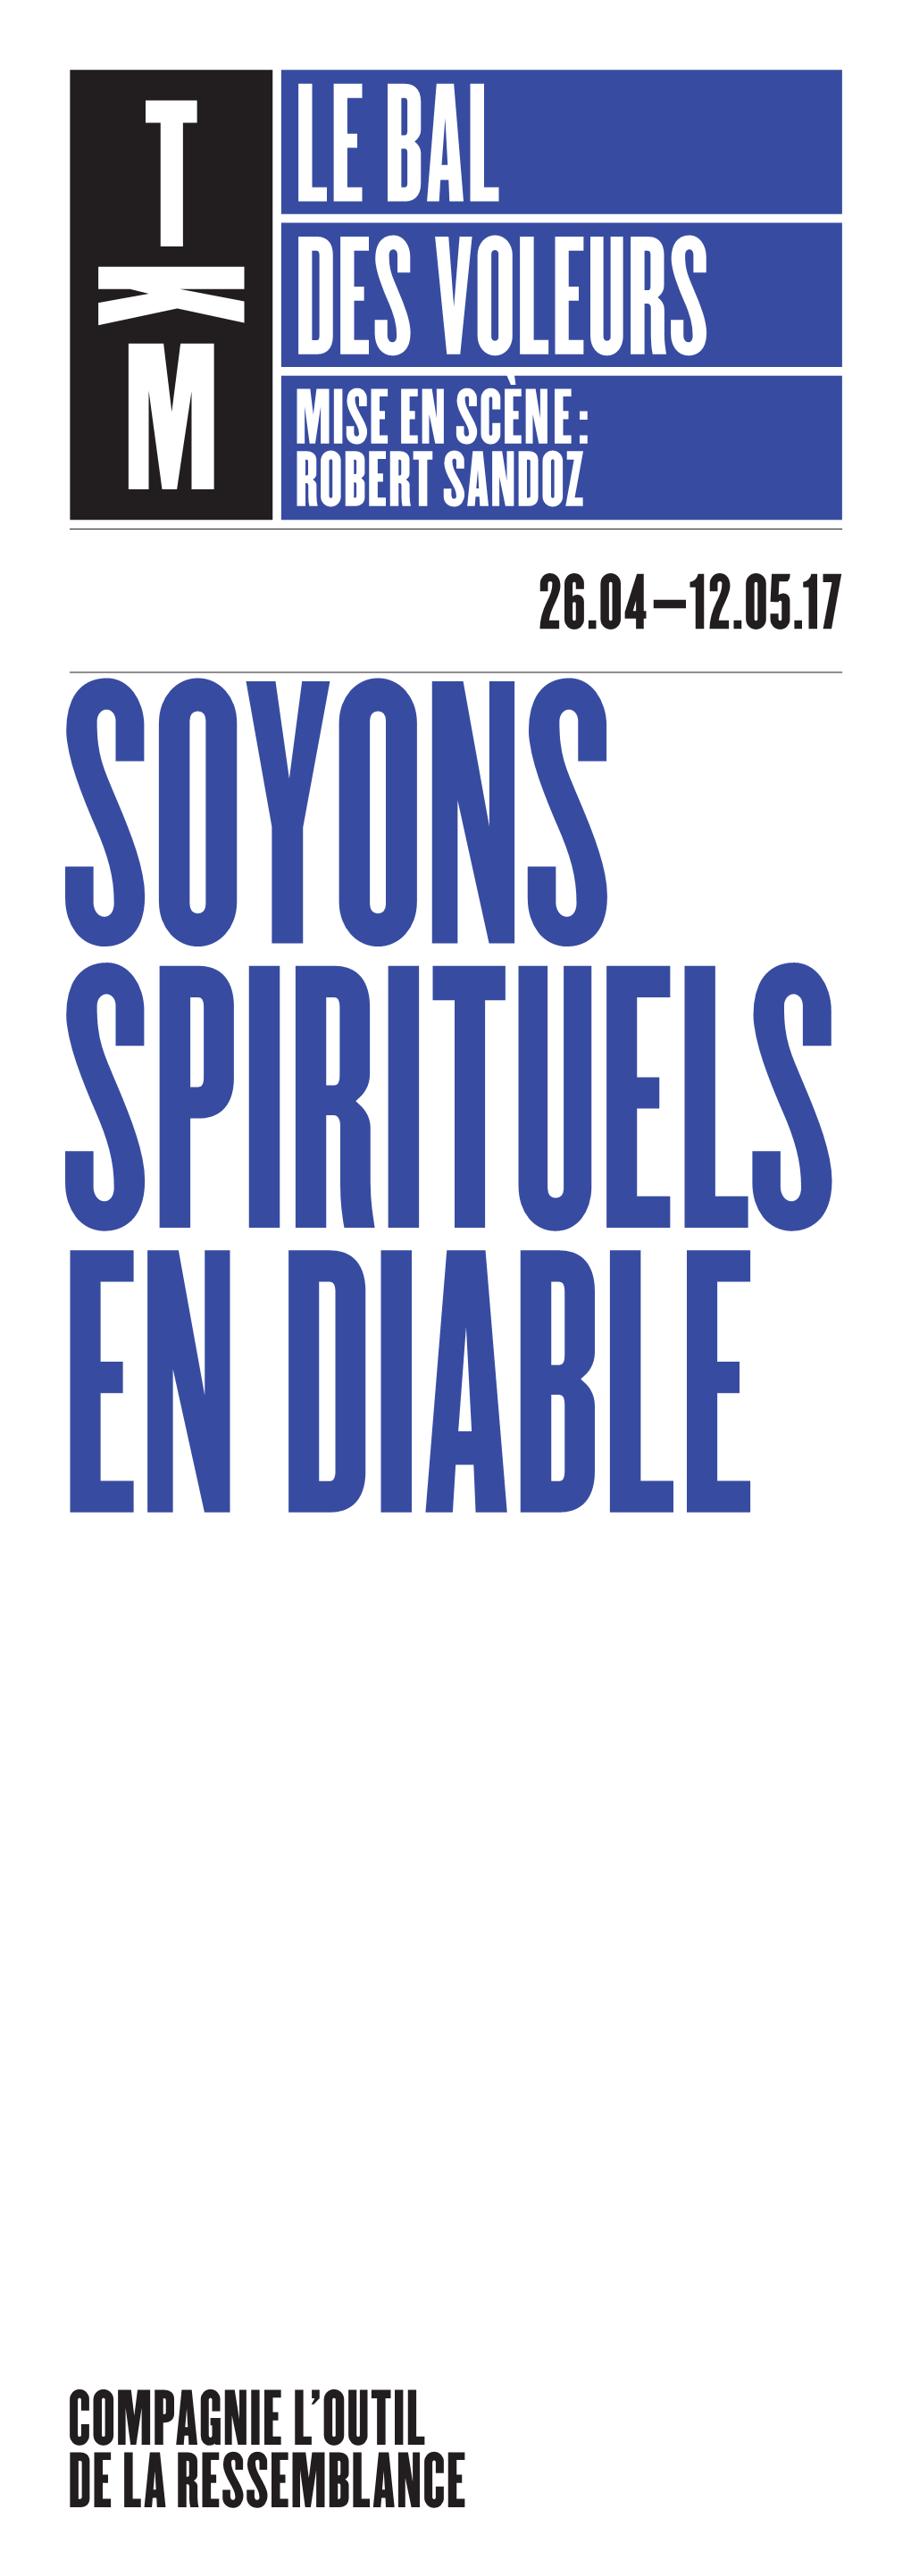 Le Bal Des Voleurs Mise En Scène: Robert Sandoz 26.04–12.05.17 Soyons Spirituels En Diable